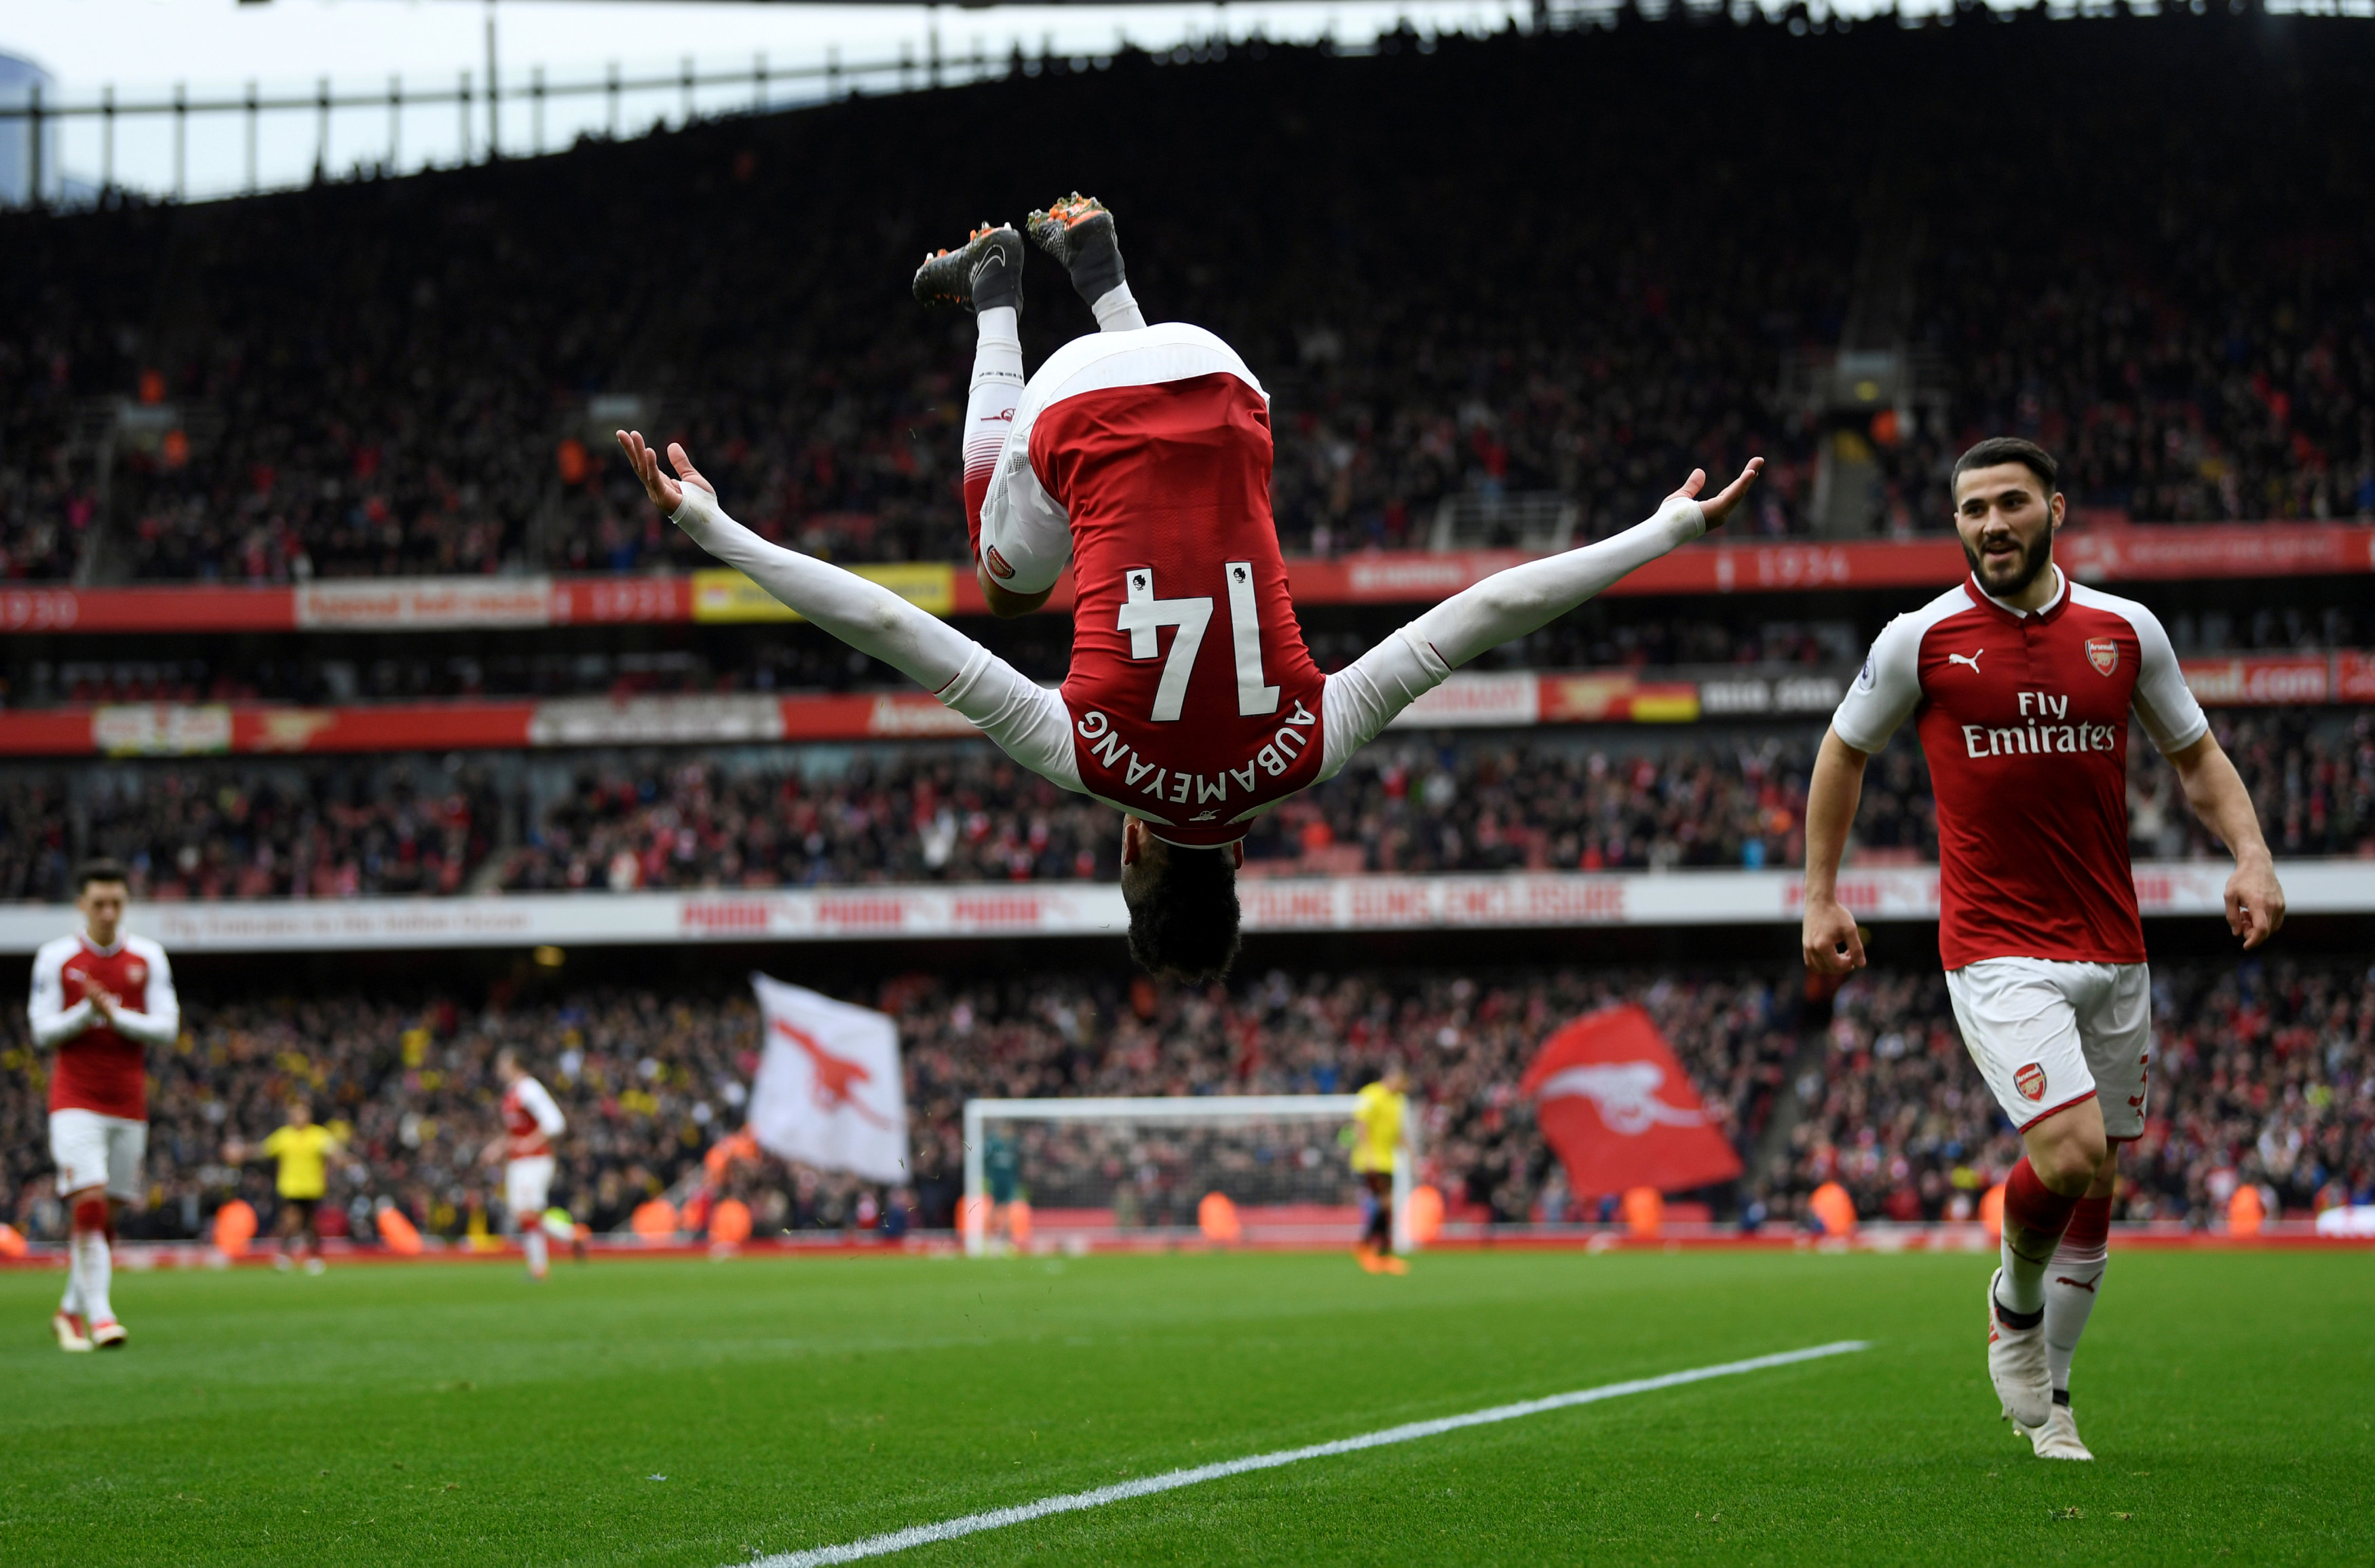 Aubameyang thực hiện cú santo ăn mừng bàn nâng tỉ số lên 2-0 cho Arsenal. Ảnh: REUTERS